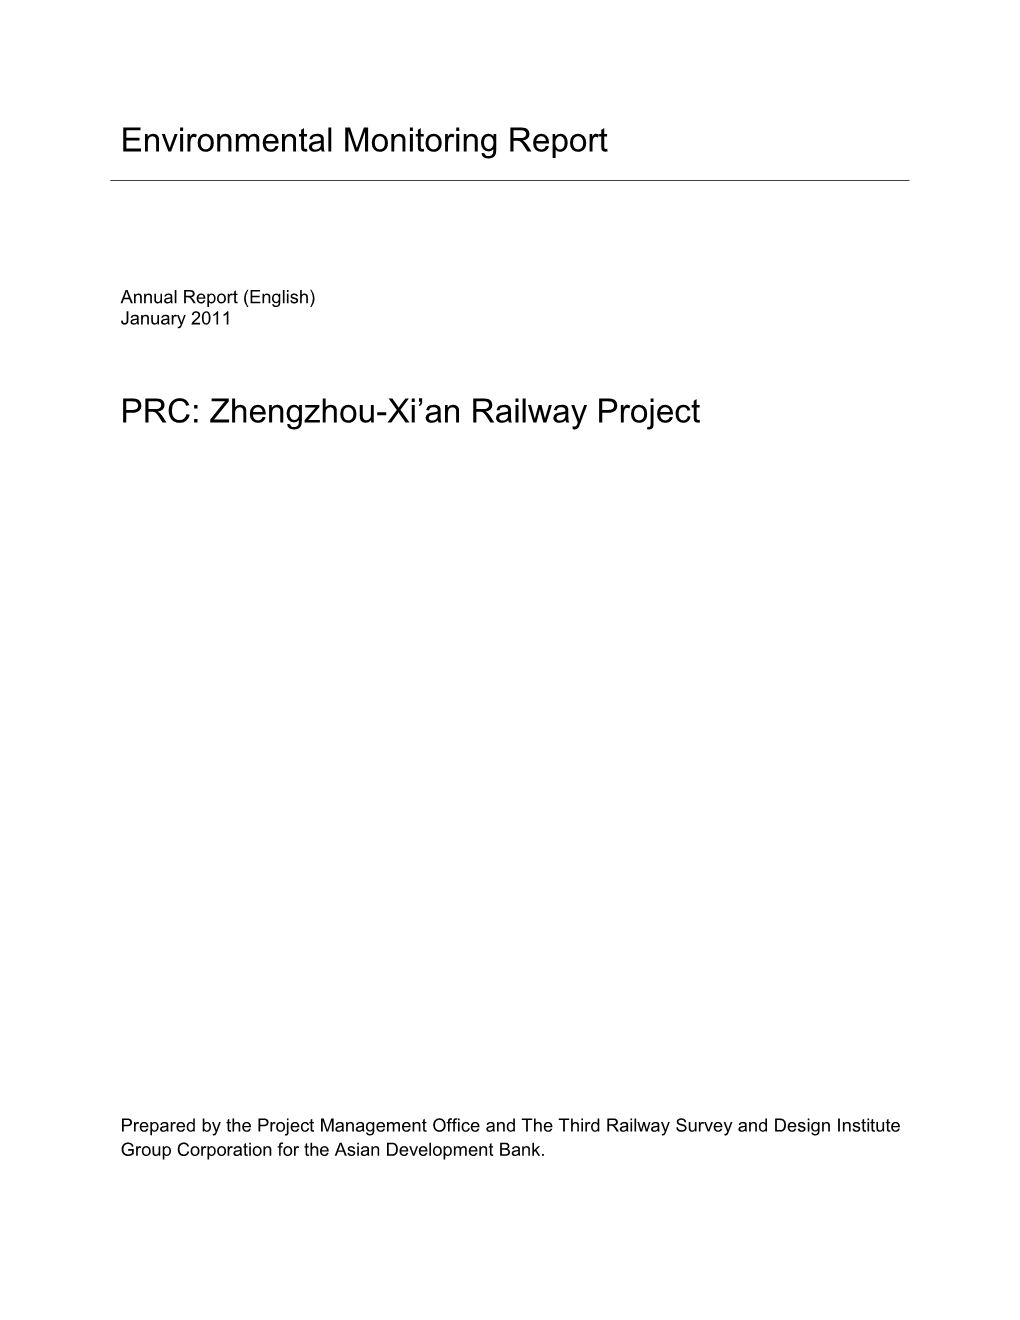 Zhengzhou-Xi'an Railway Project